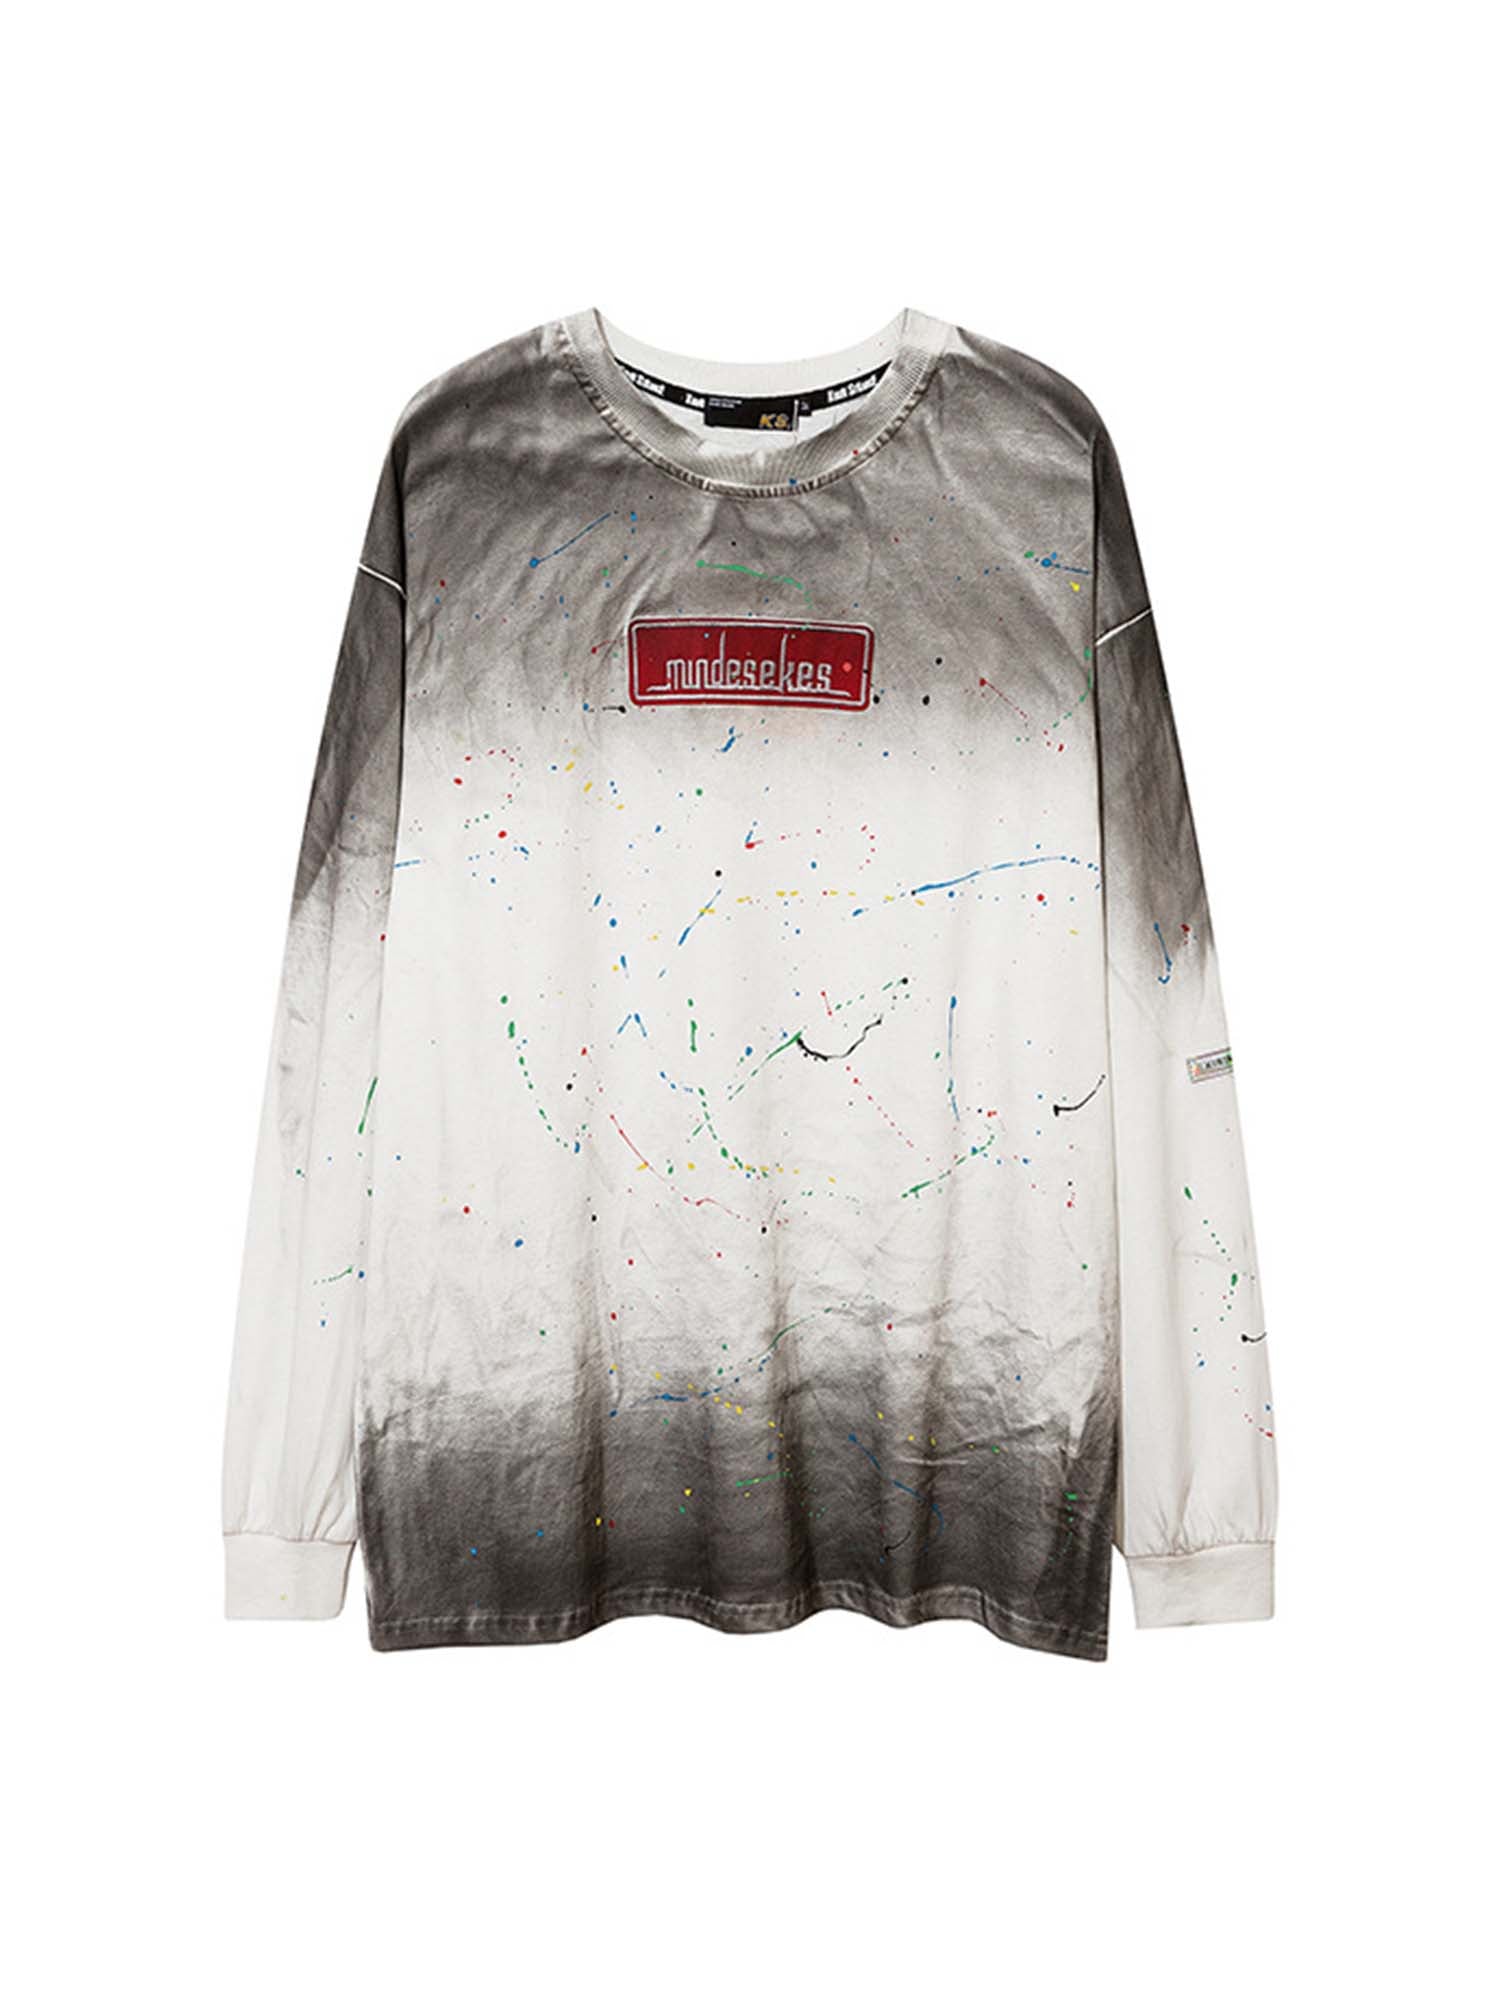 Justnotag Tie-dye Gradient Splash Ink T-shirt à manches longues en coton imprimé